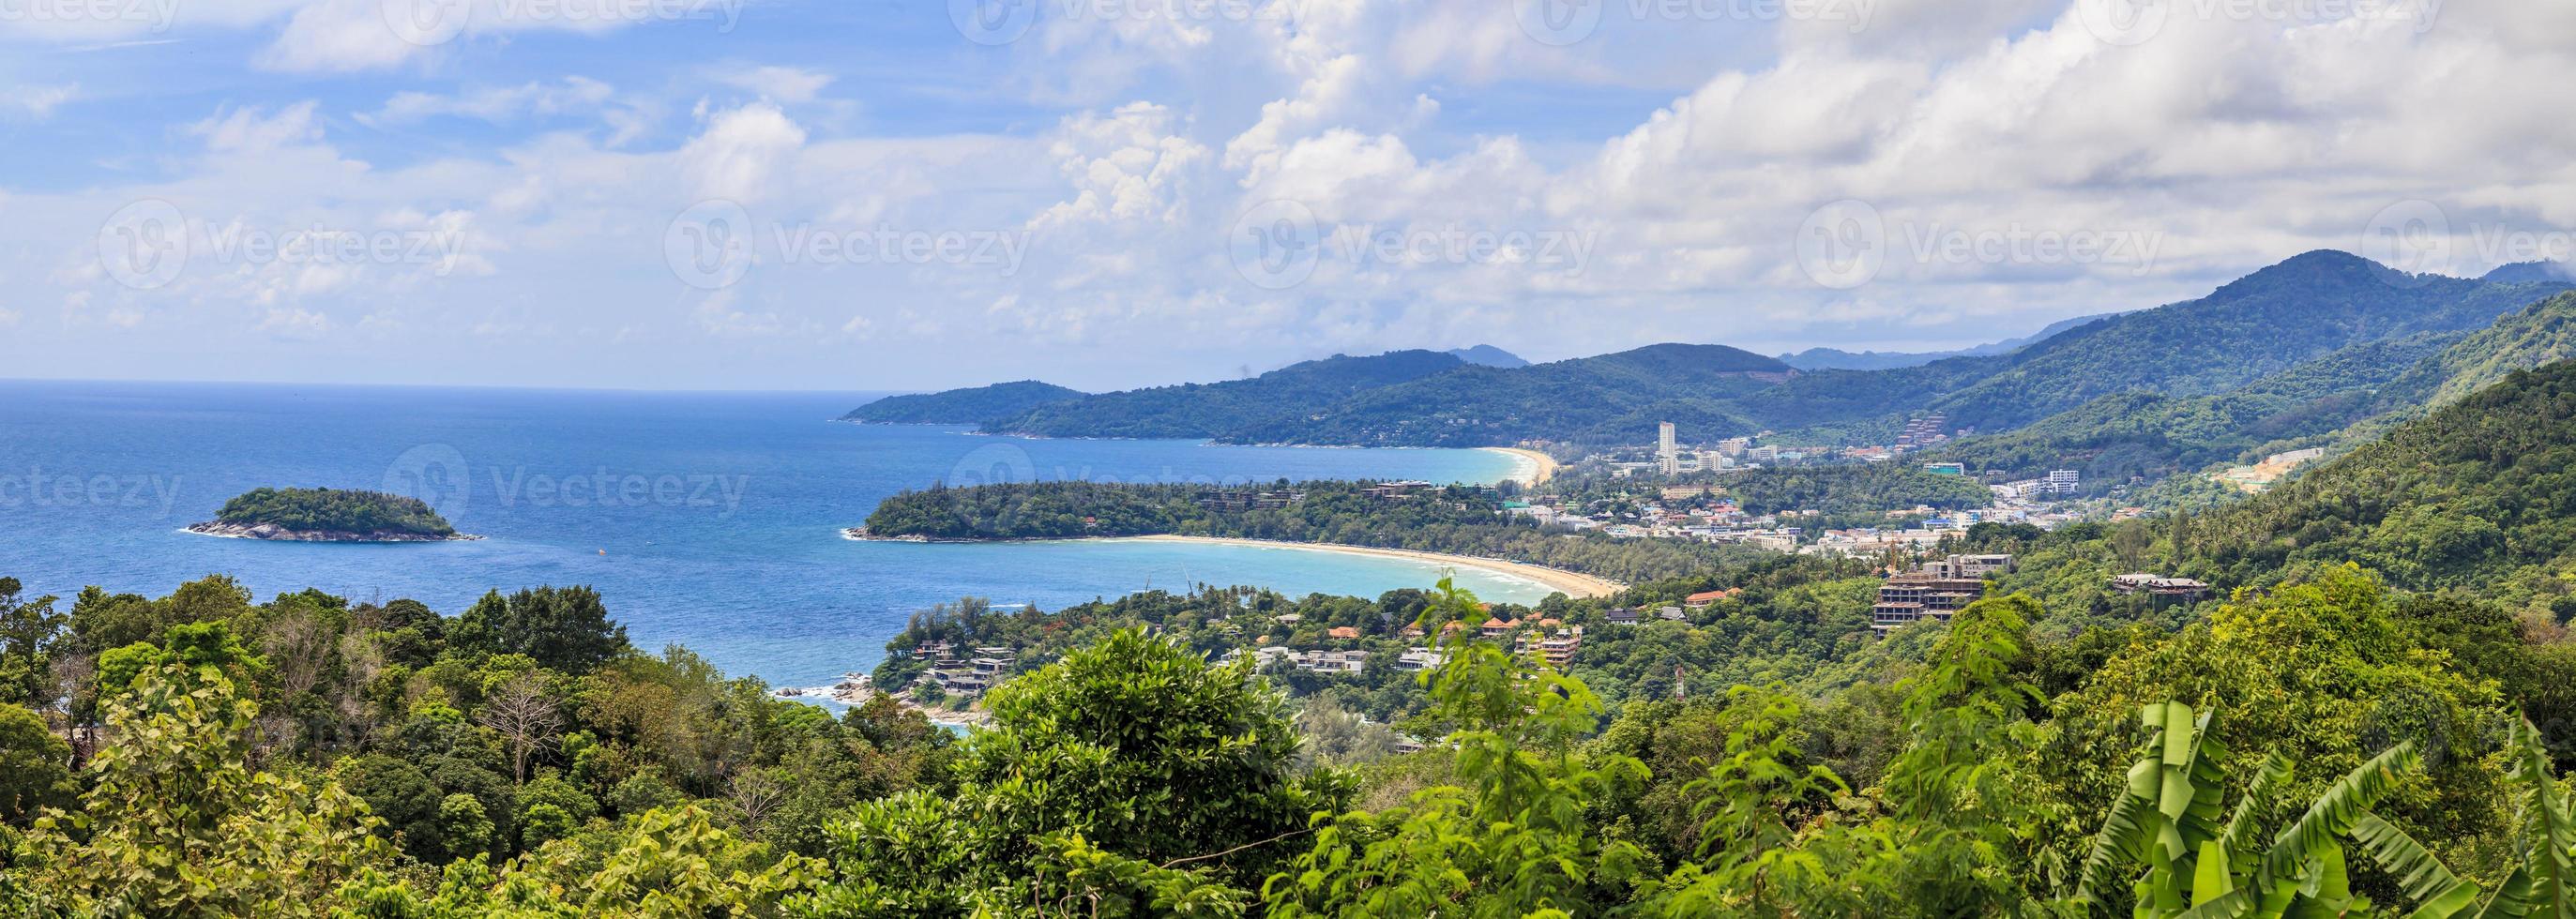 vista desde el punto de vista de karon en la isla de phuket foto